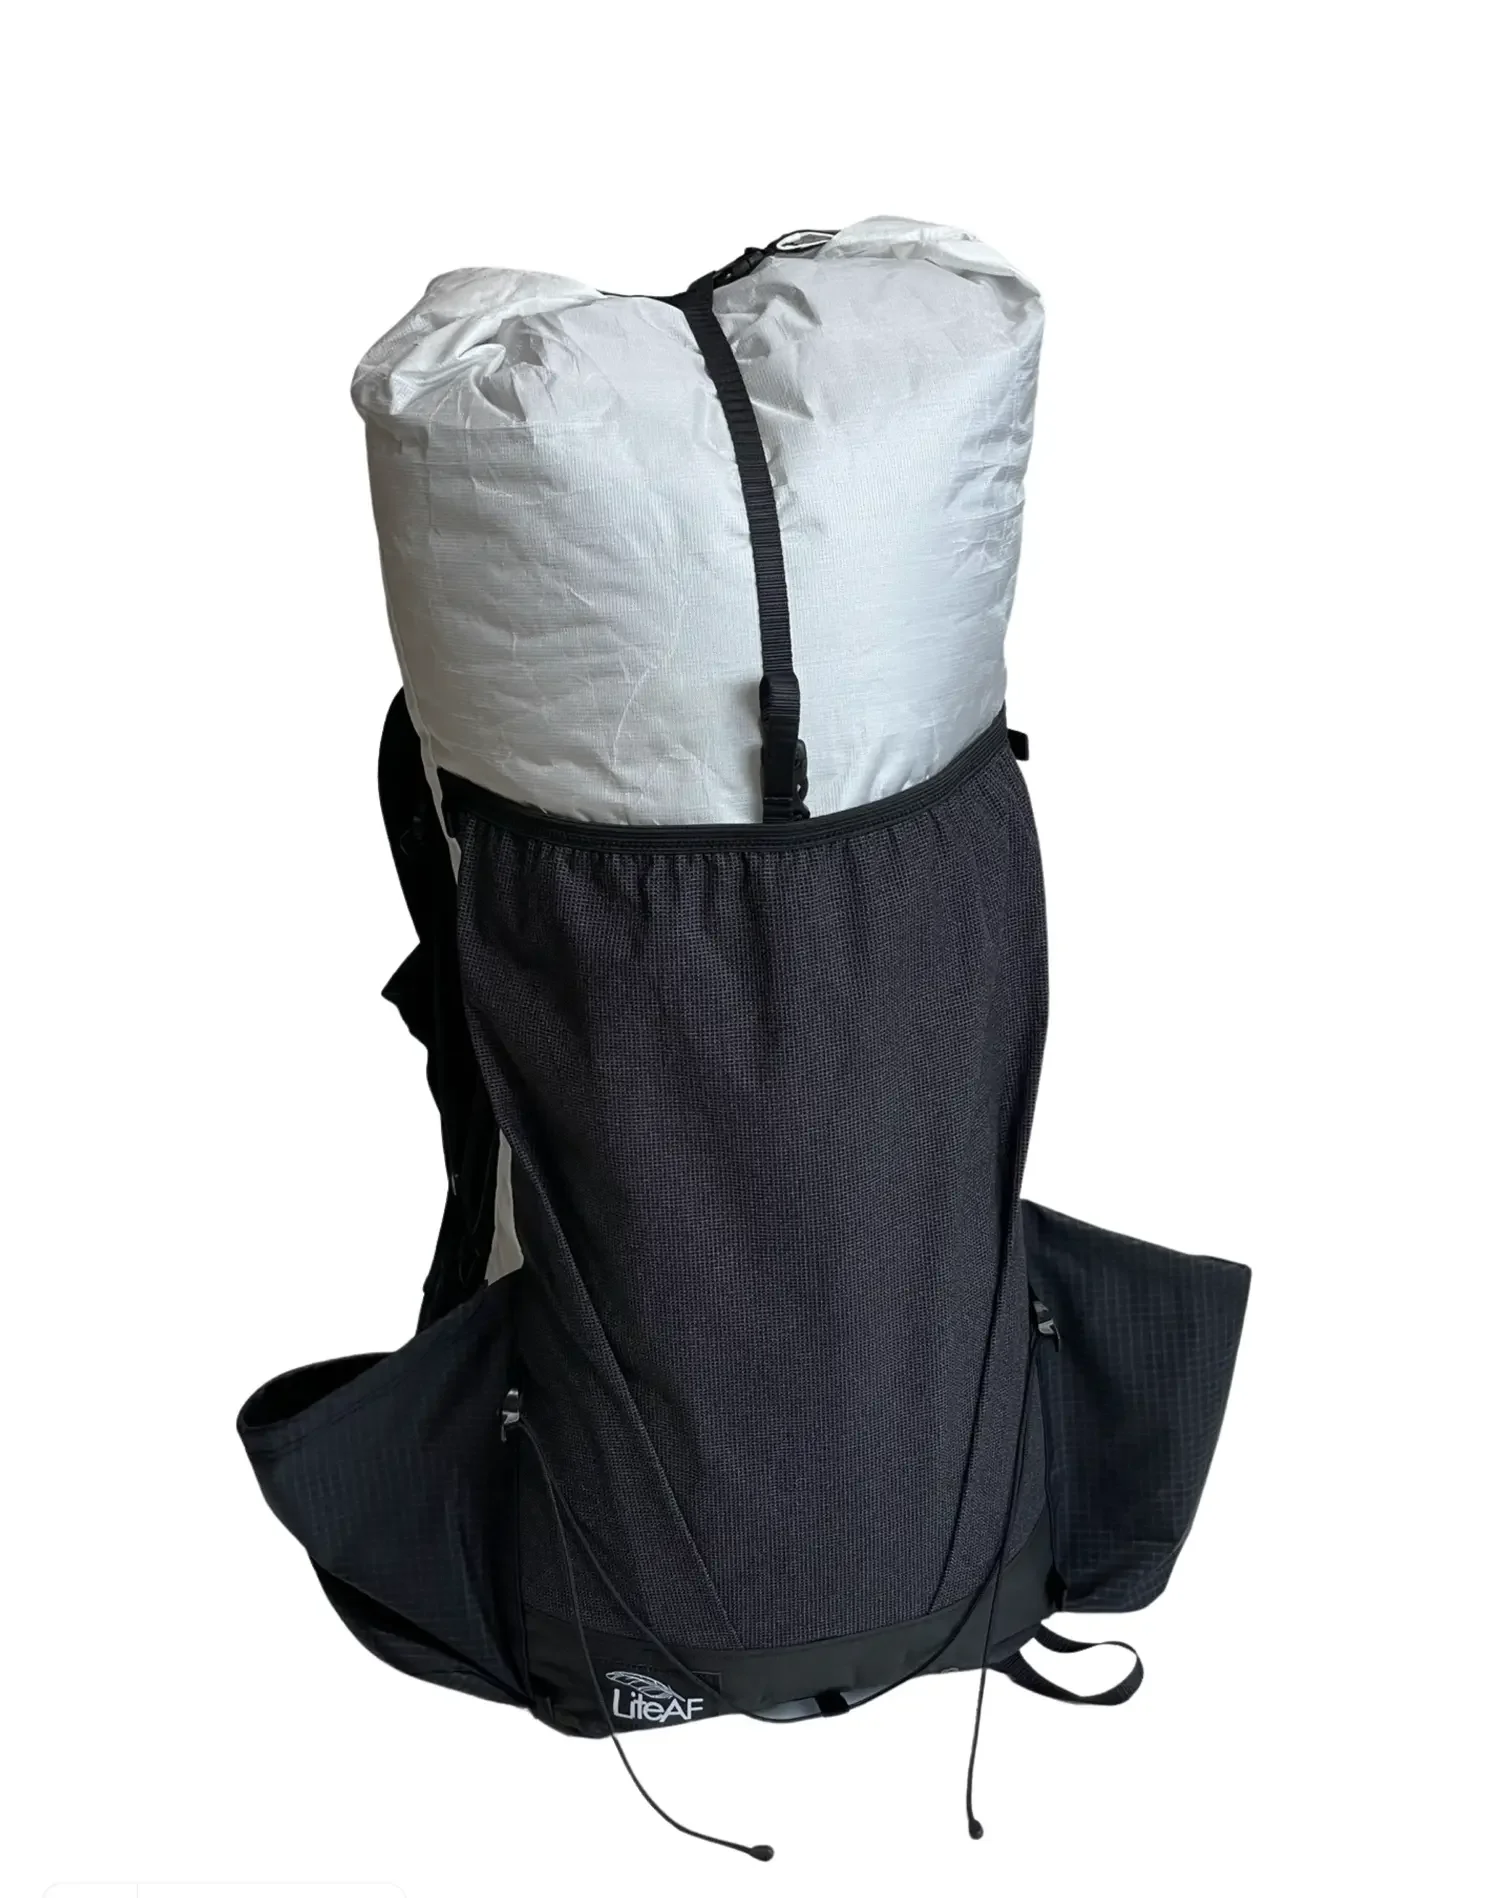 LiteAF 35L Curve Backpack Review - Backpacking Light